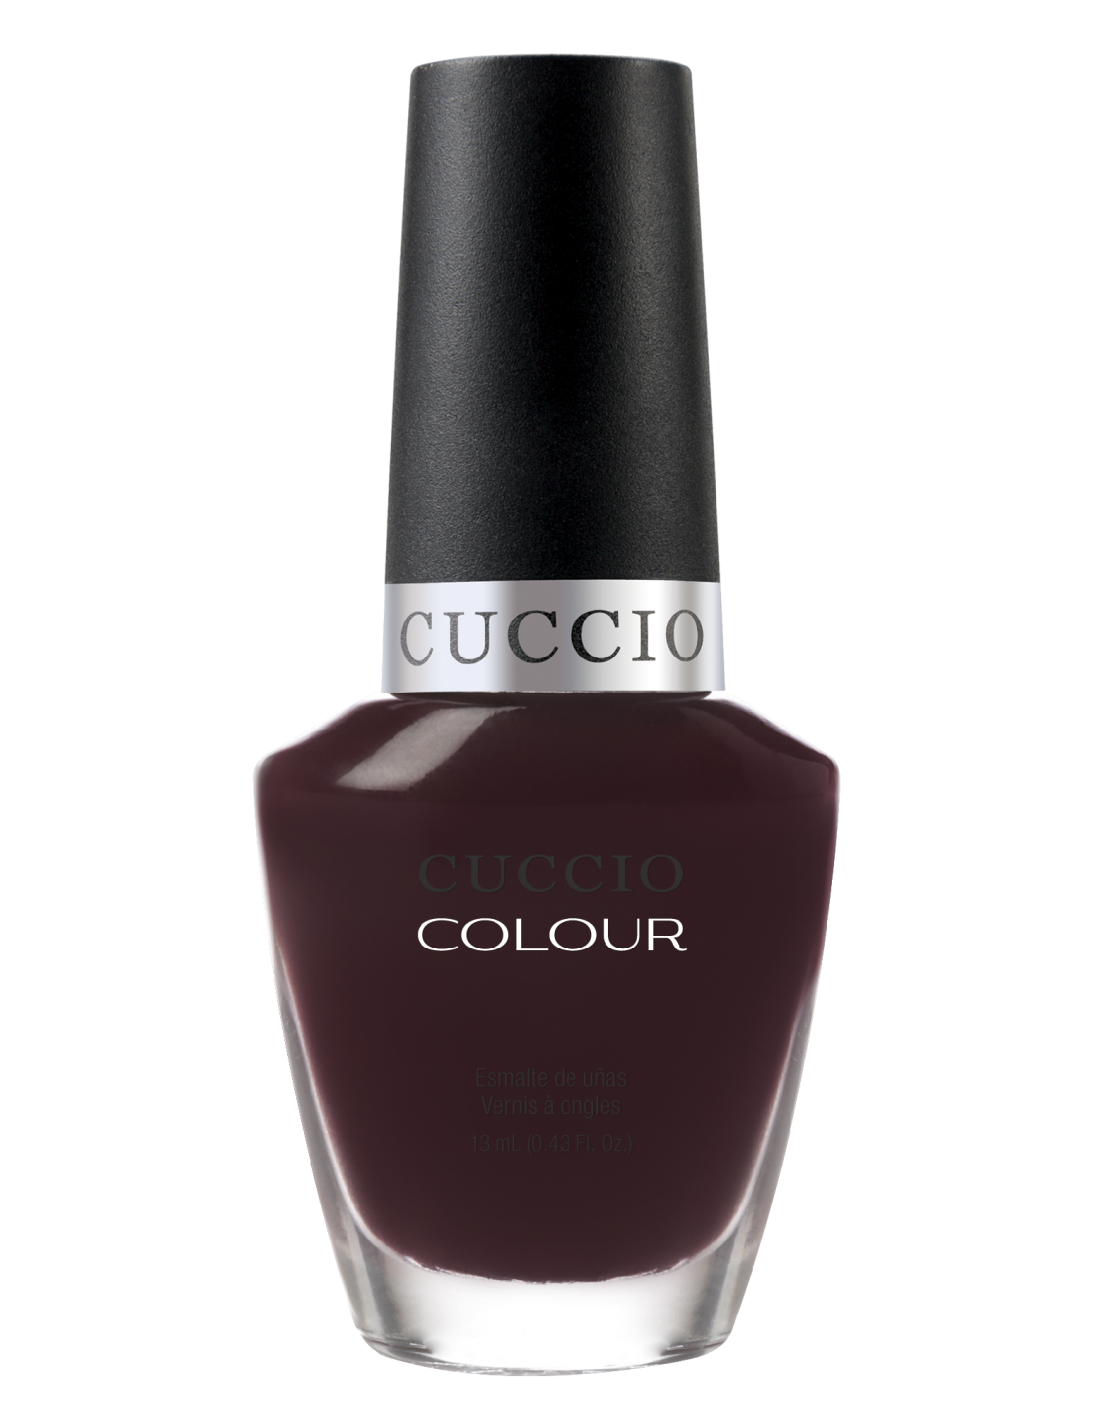 Cuccio Colour Positively Positano Nail Laquer 13ml